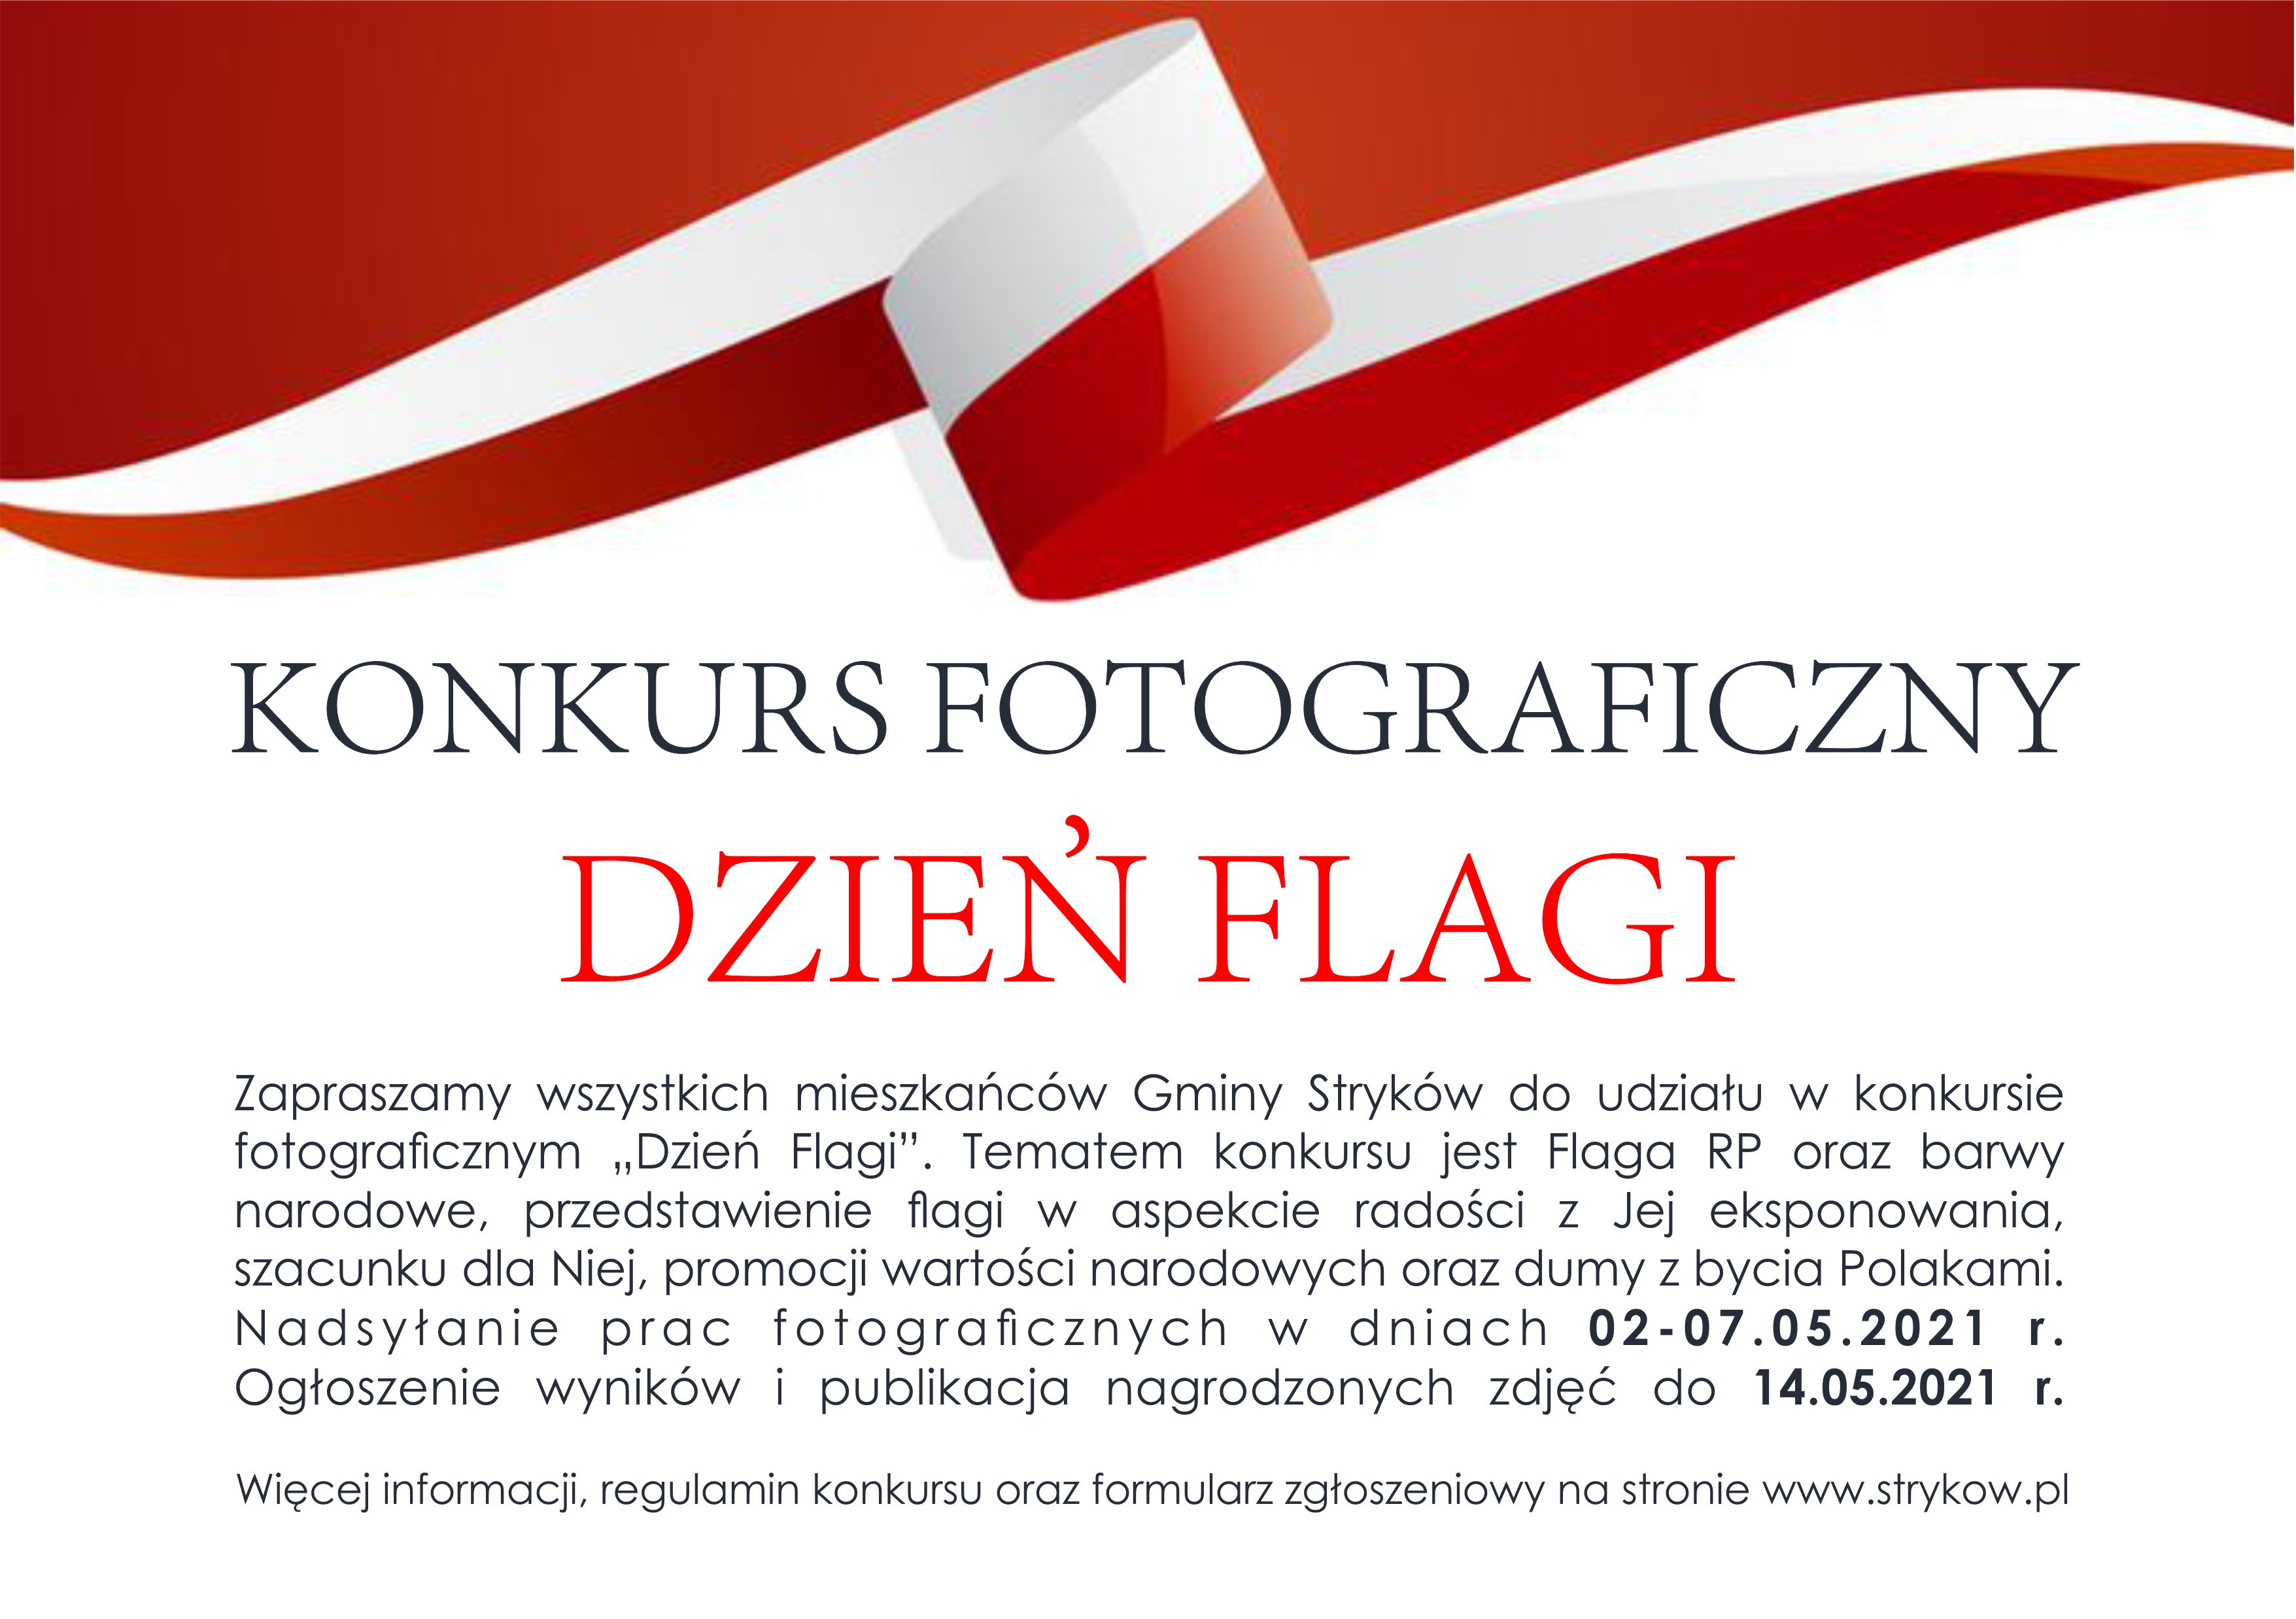 Konkurs fotograficzny "Dzień Flagi"